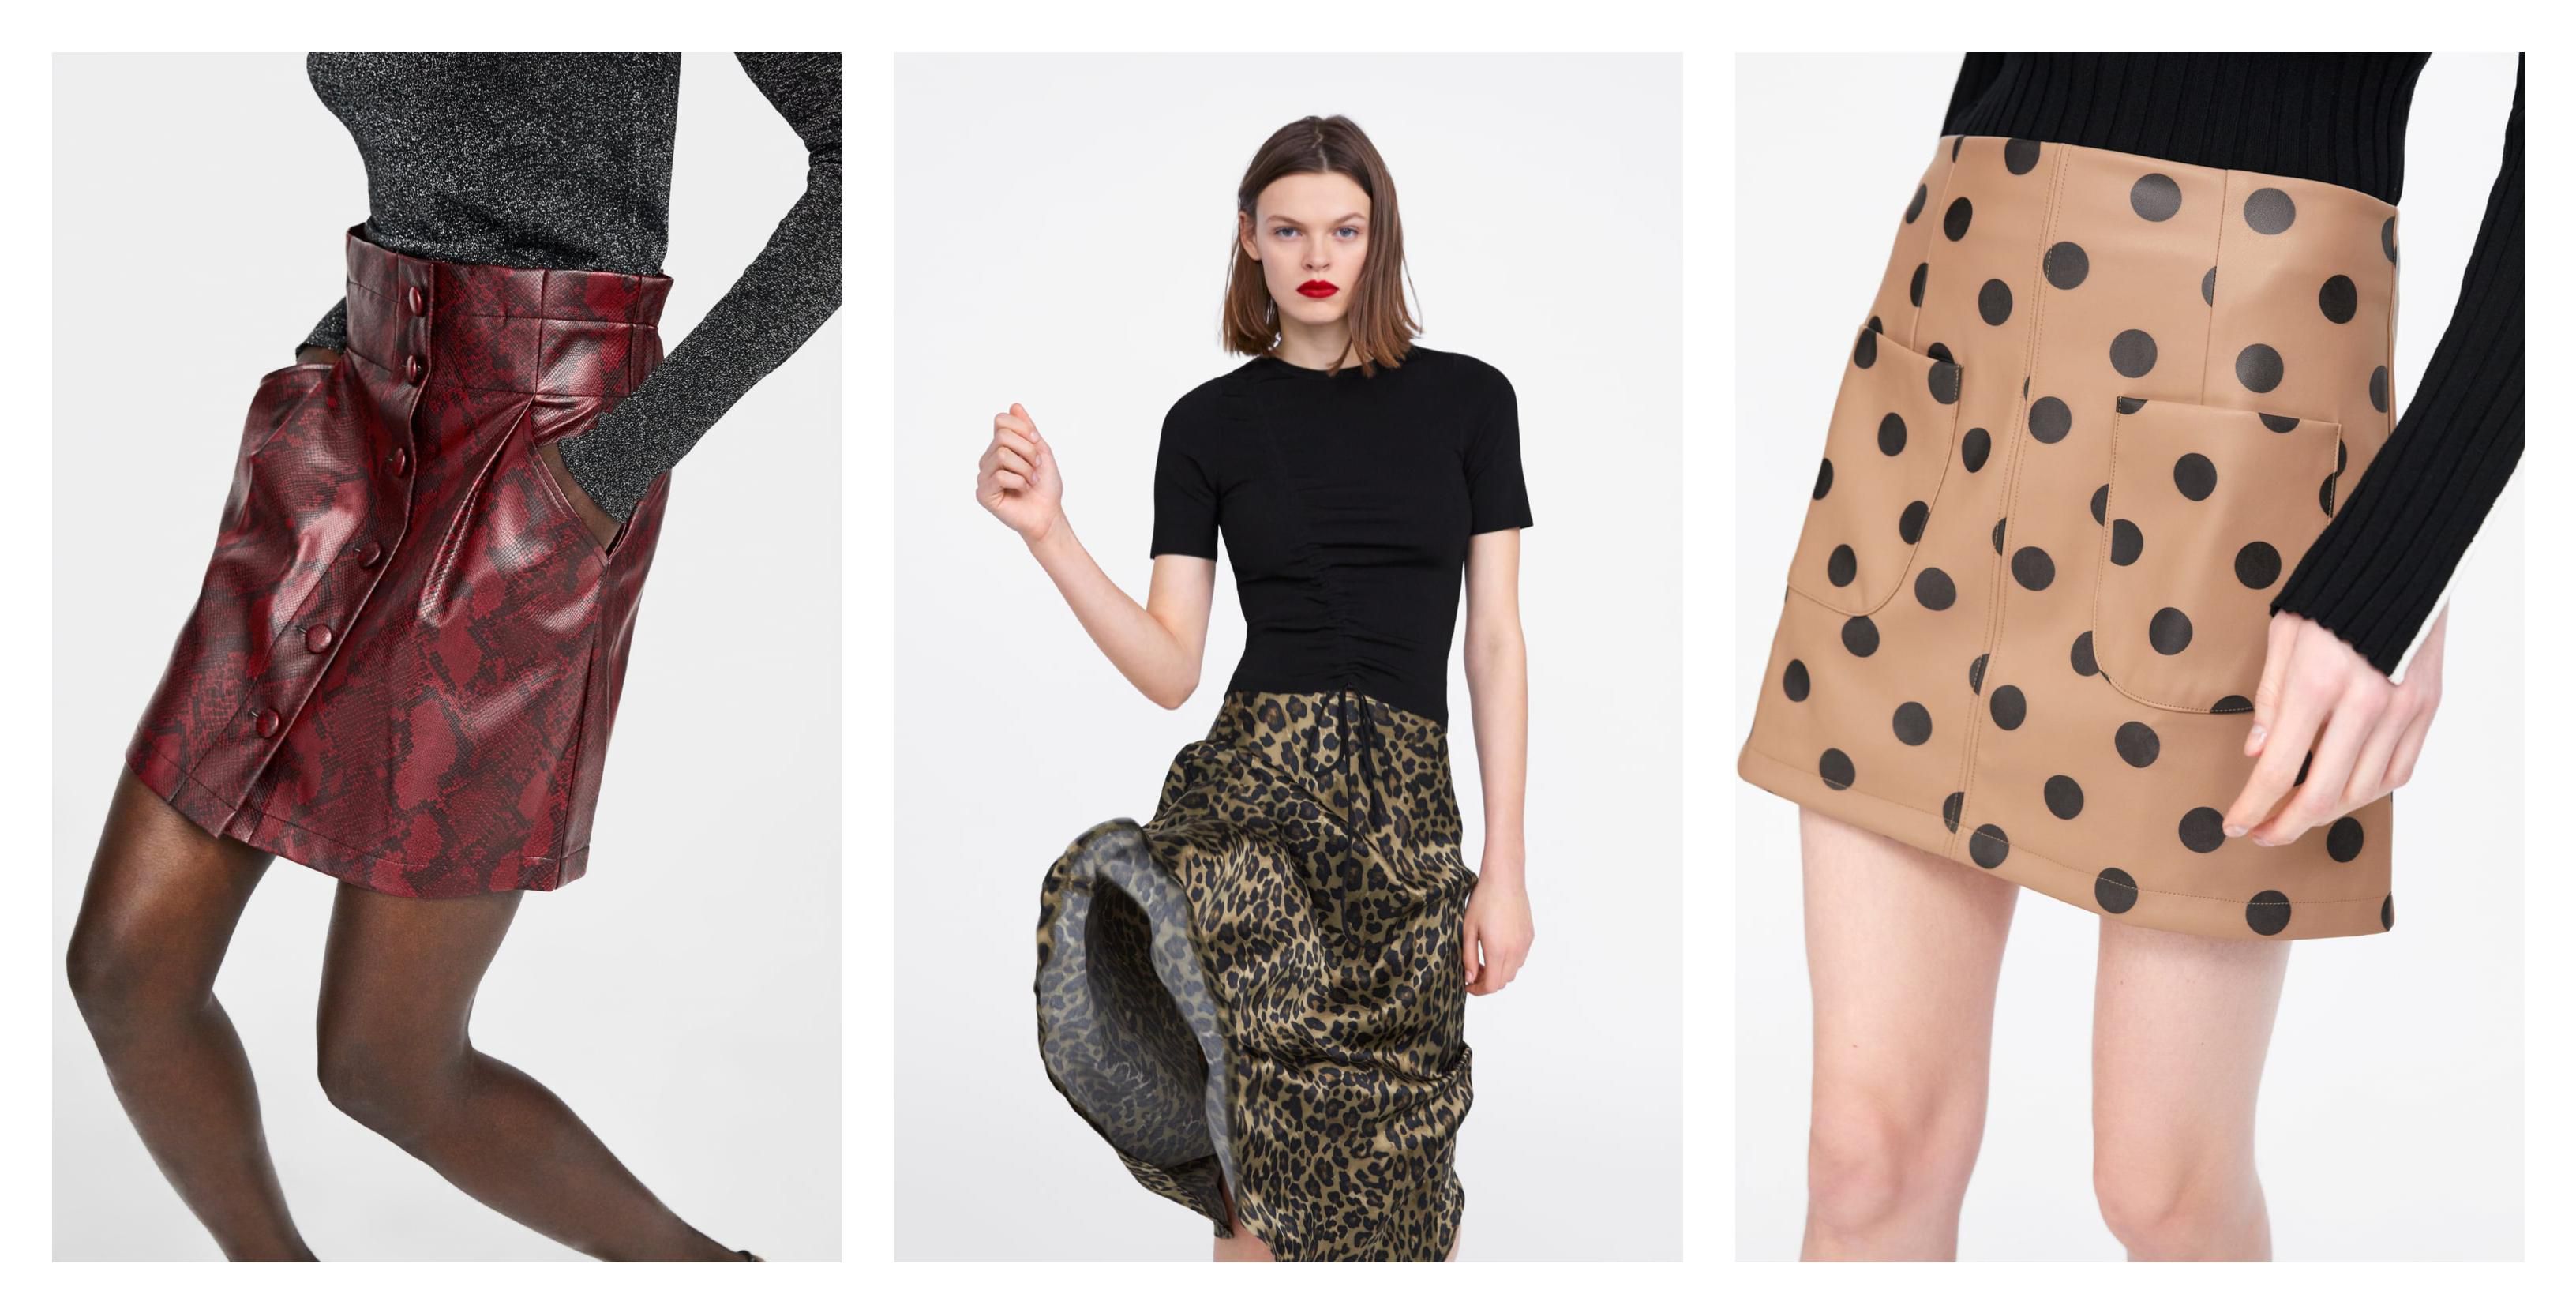 Zara ove sezone ima u ponudi najbolje suknje do sad, a ovo su naši favoriti!